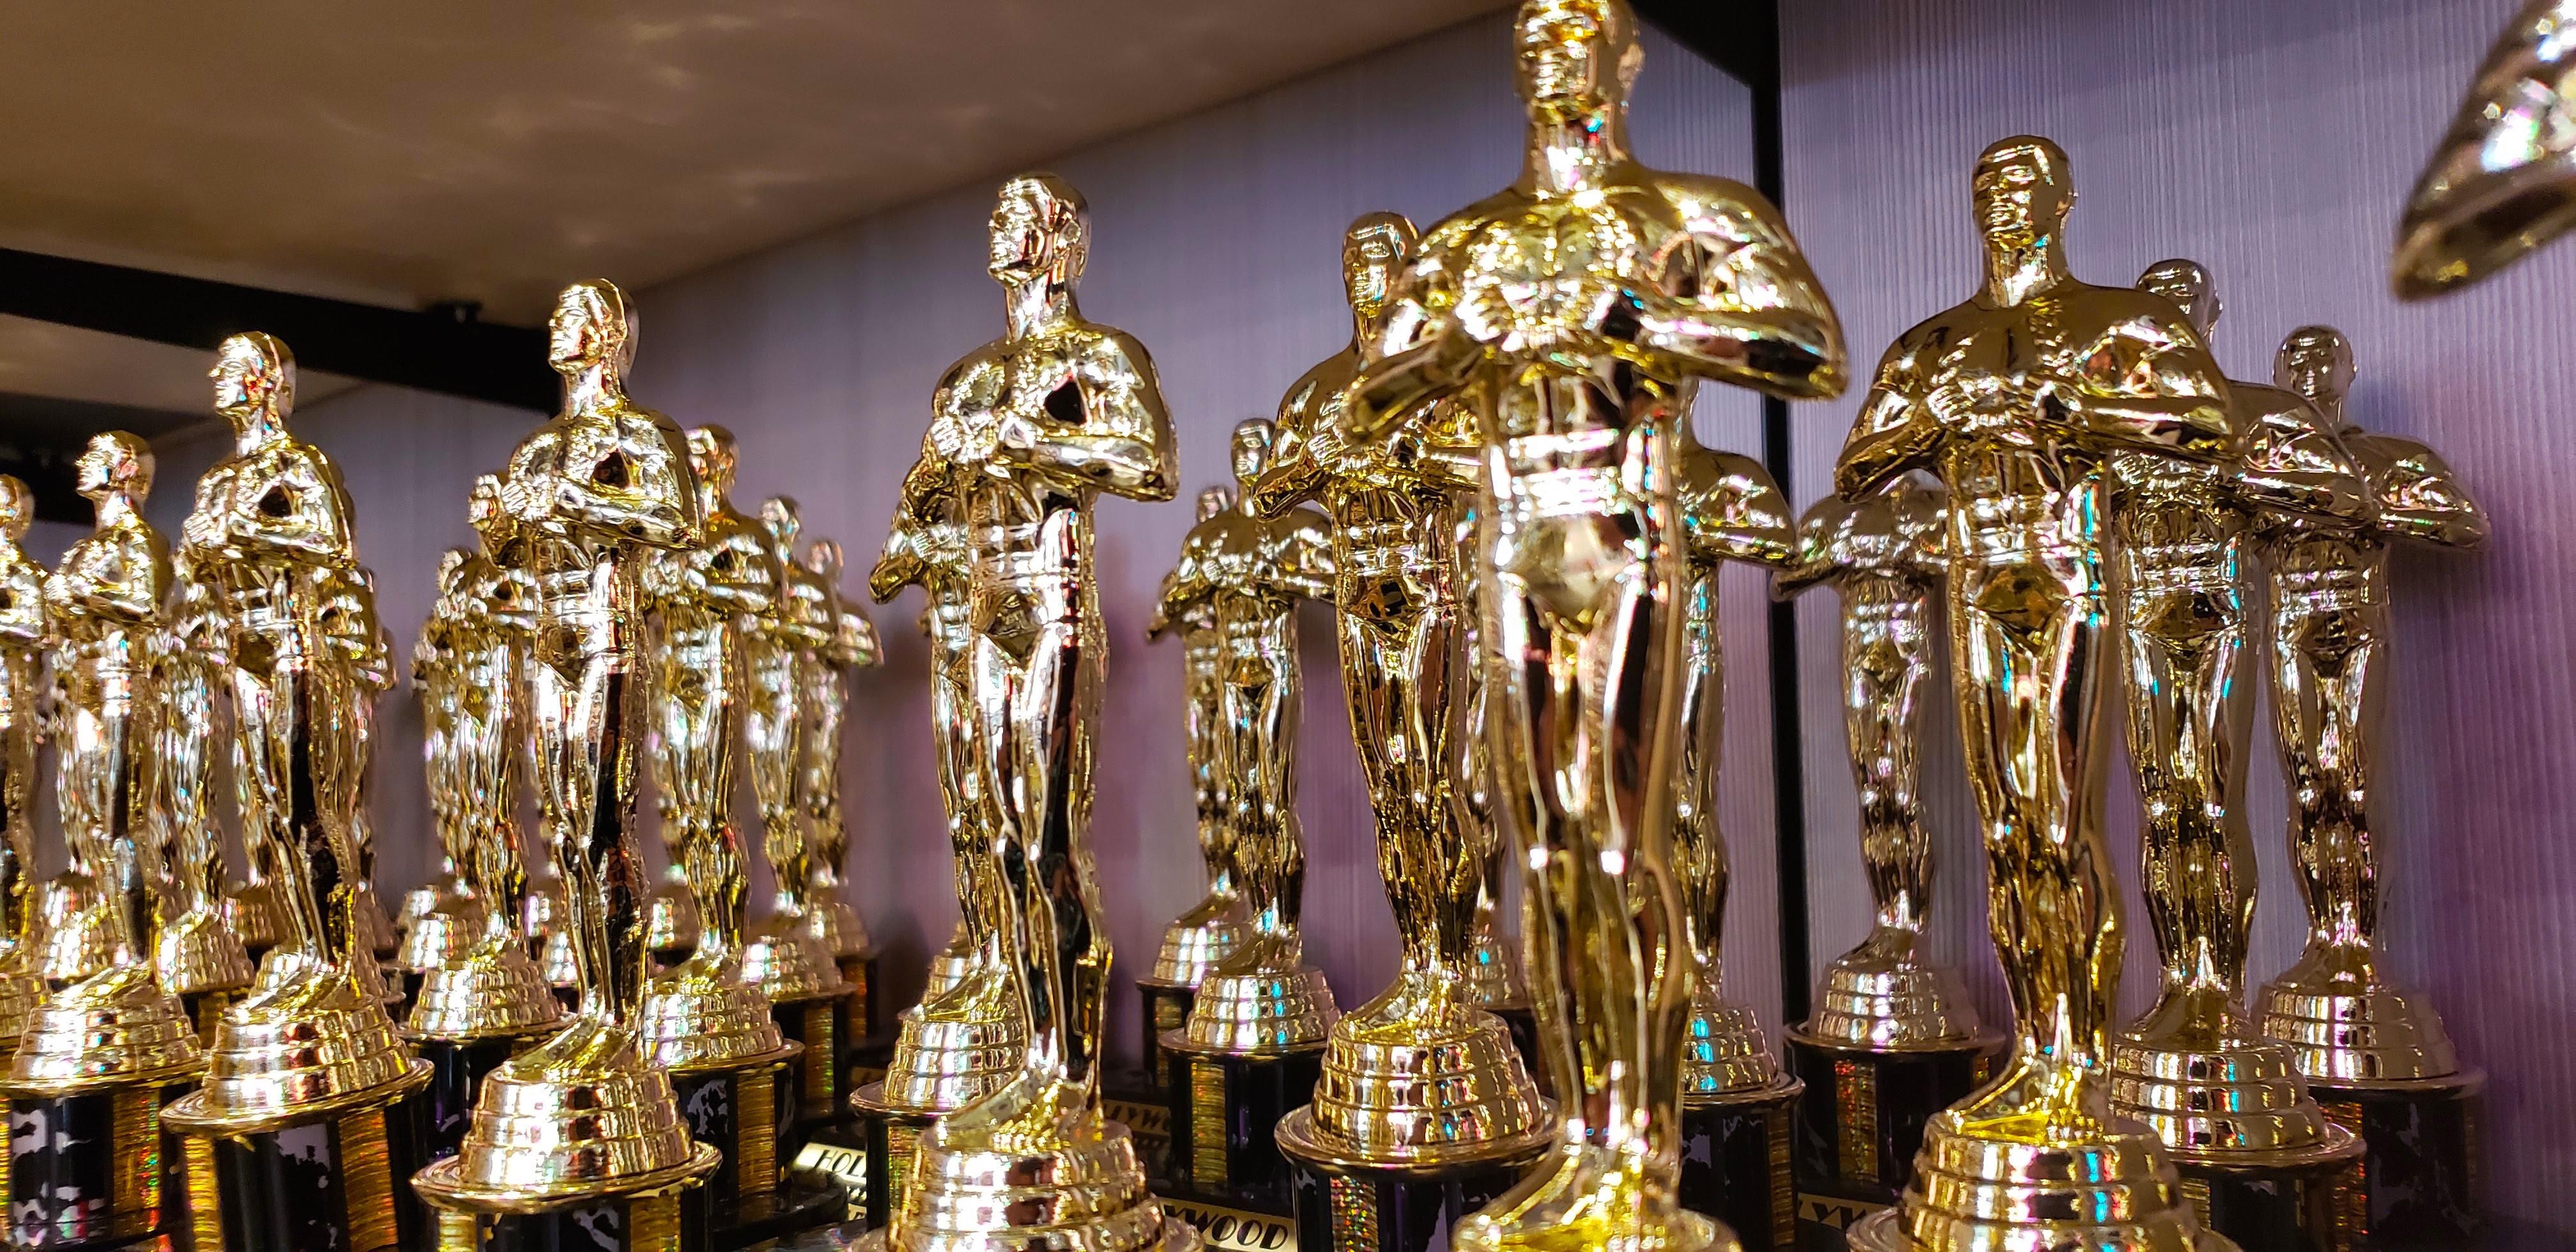 Los premios Óscar son importantes para la histroria del cine.